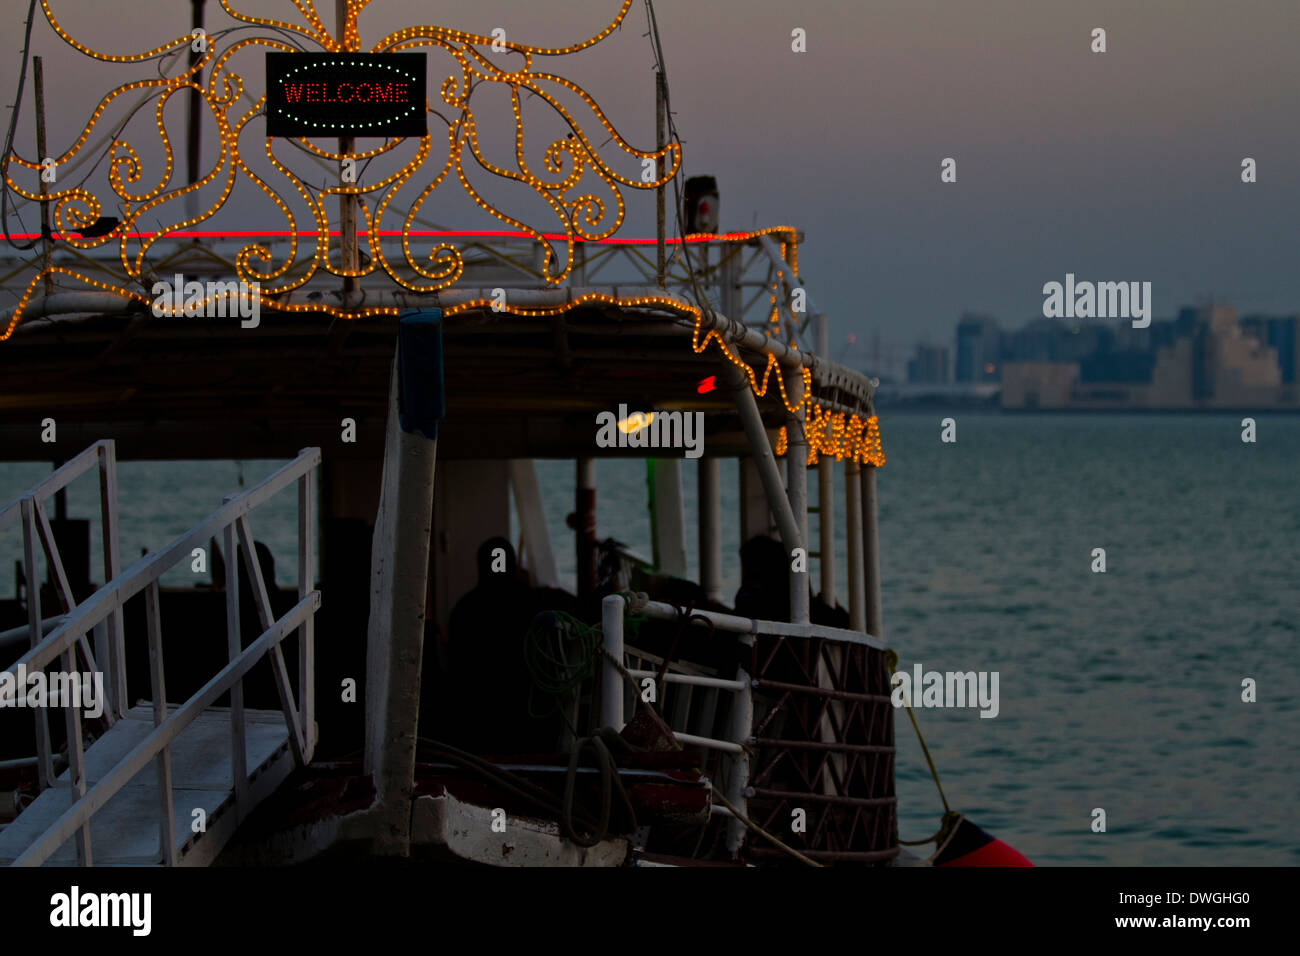 Qatar Doha las luces de la ciudad frente al mar embarcaciones tradicionales Foto de stock